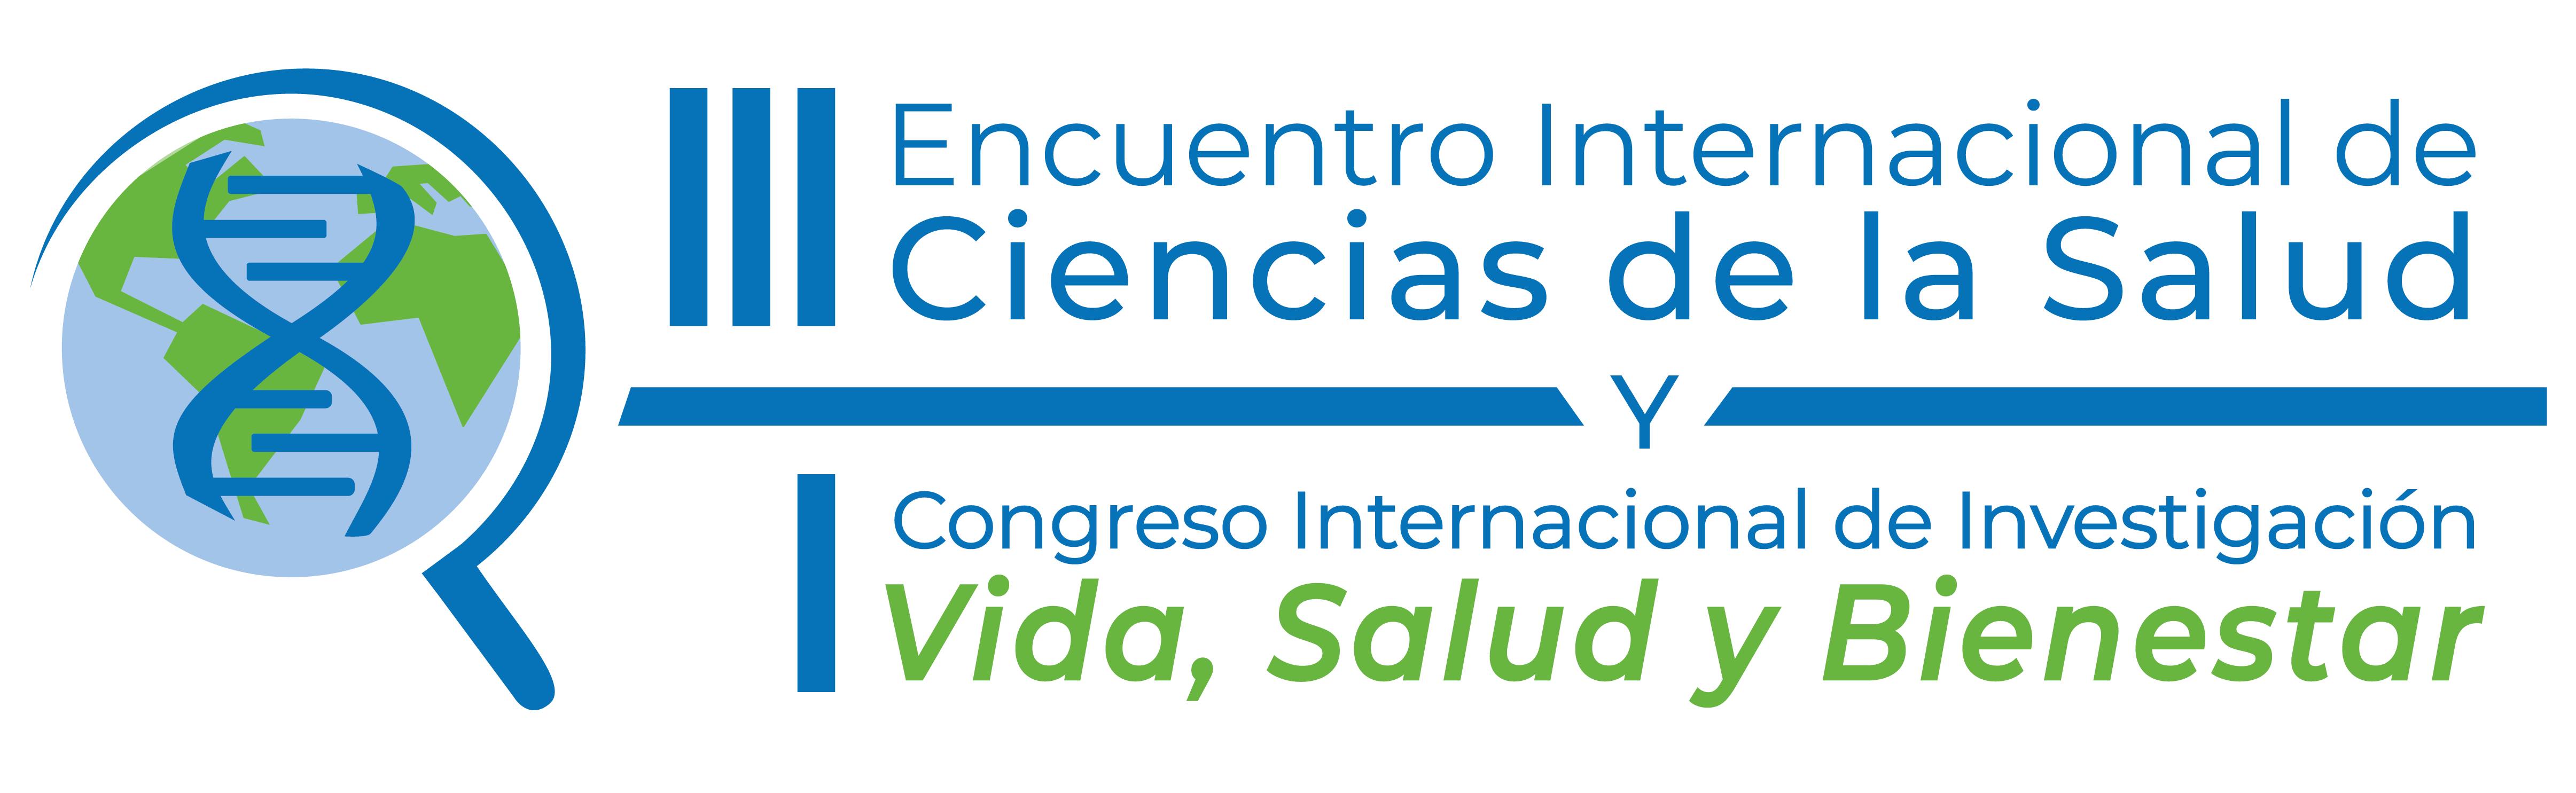 Agéndate! 3, 4, y 5 de noviembre en la Facultad de Salud con Encuentro y  Congreso Internacional – Universidad Industrial de Santander